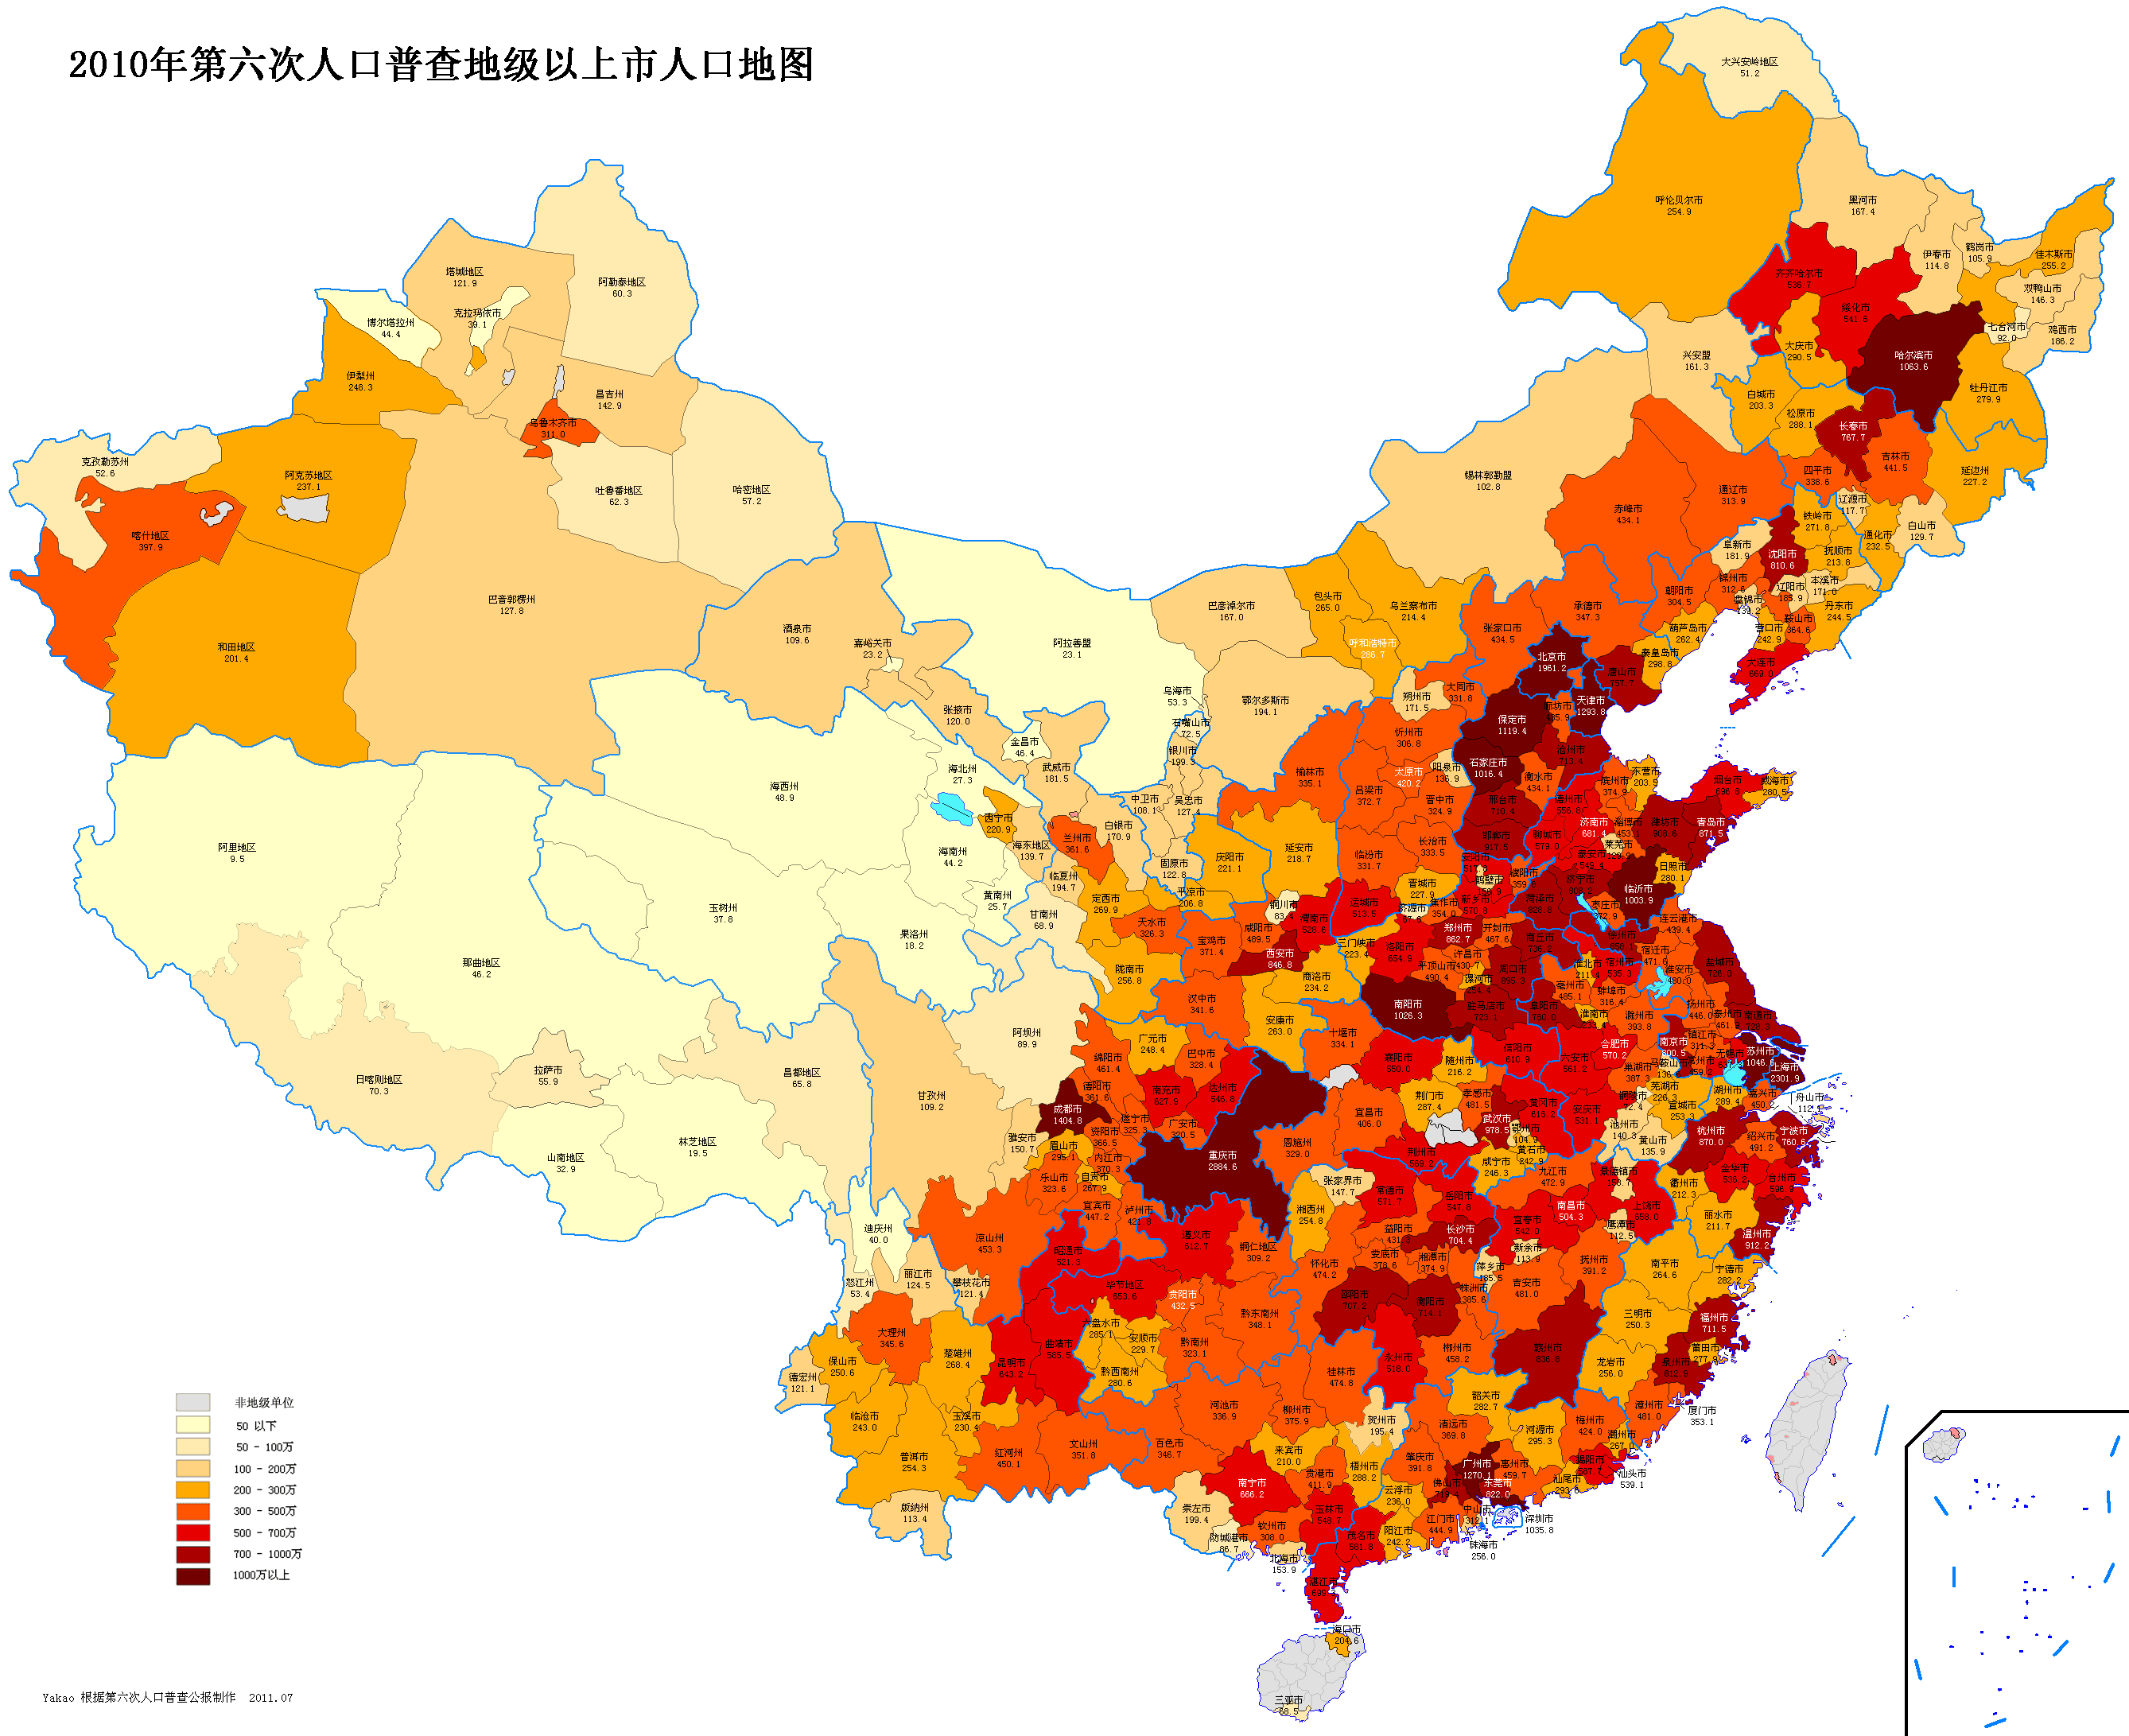 中国人口数量变化图_济南城市人口数量